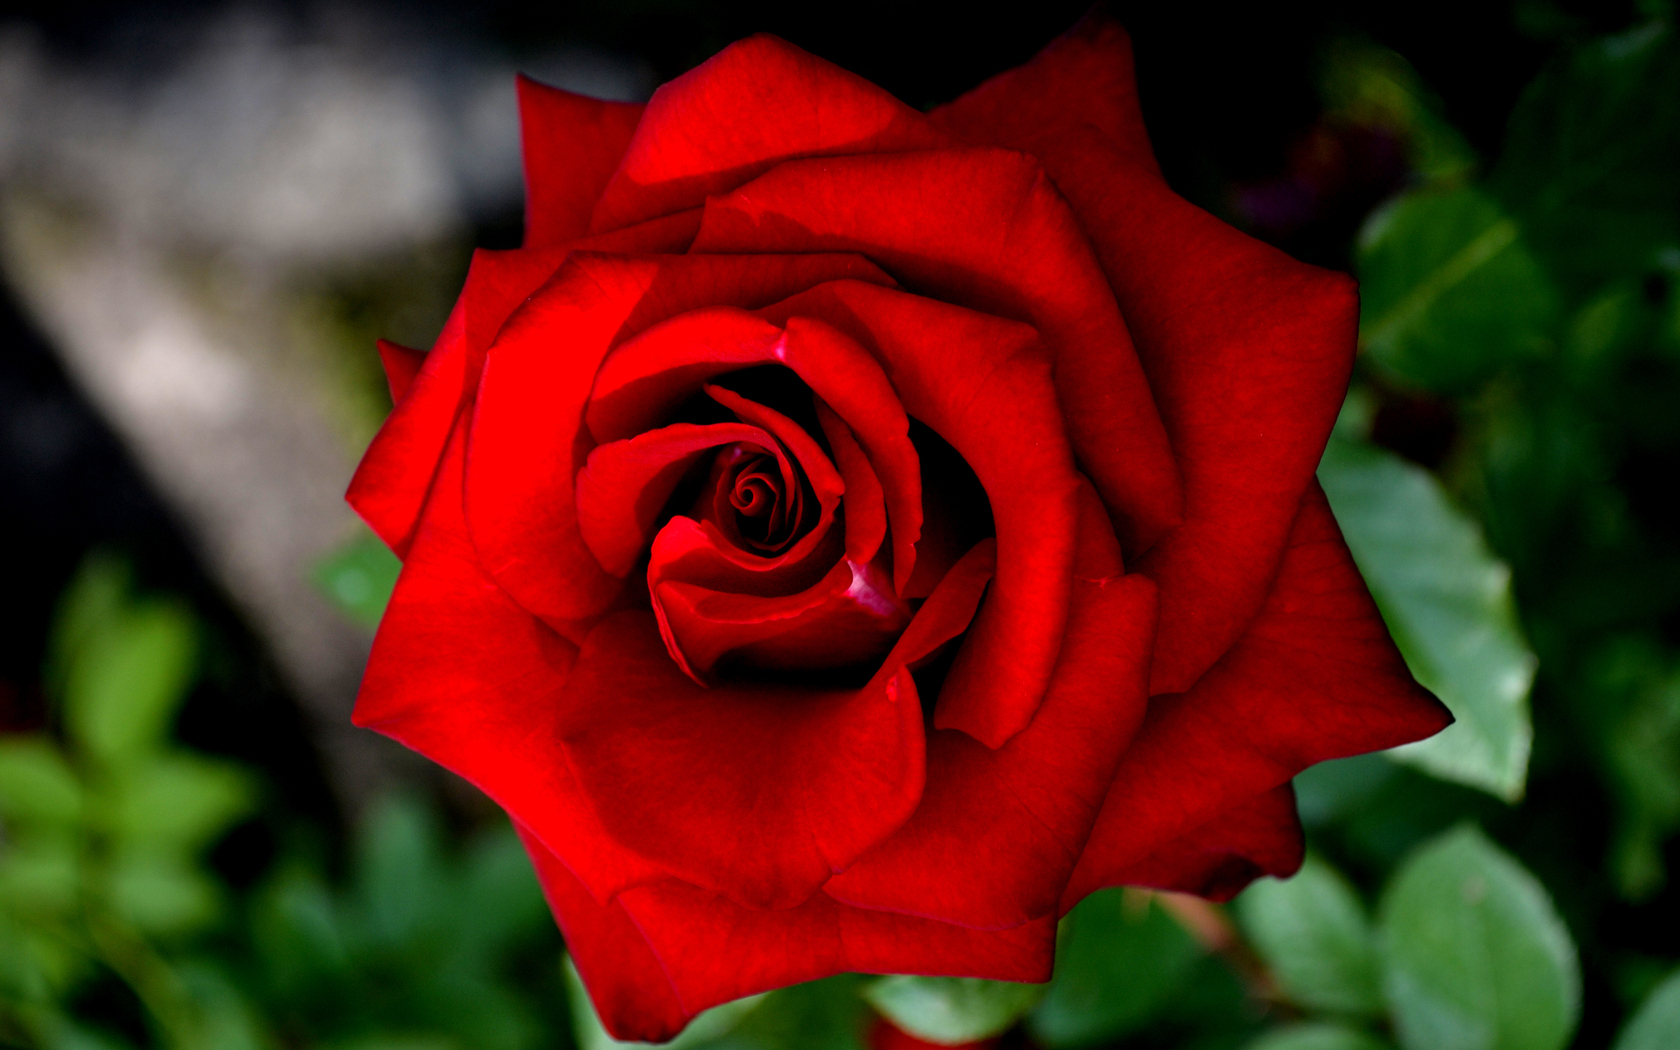  Цветы роза, красивый цветок, красная роза картинка, обои рабочий стол